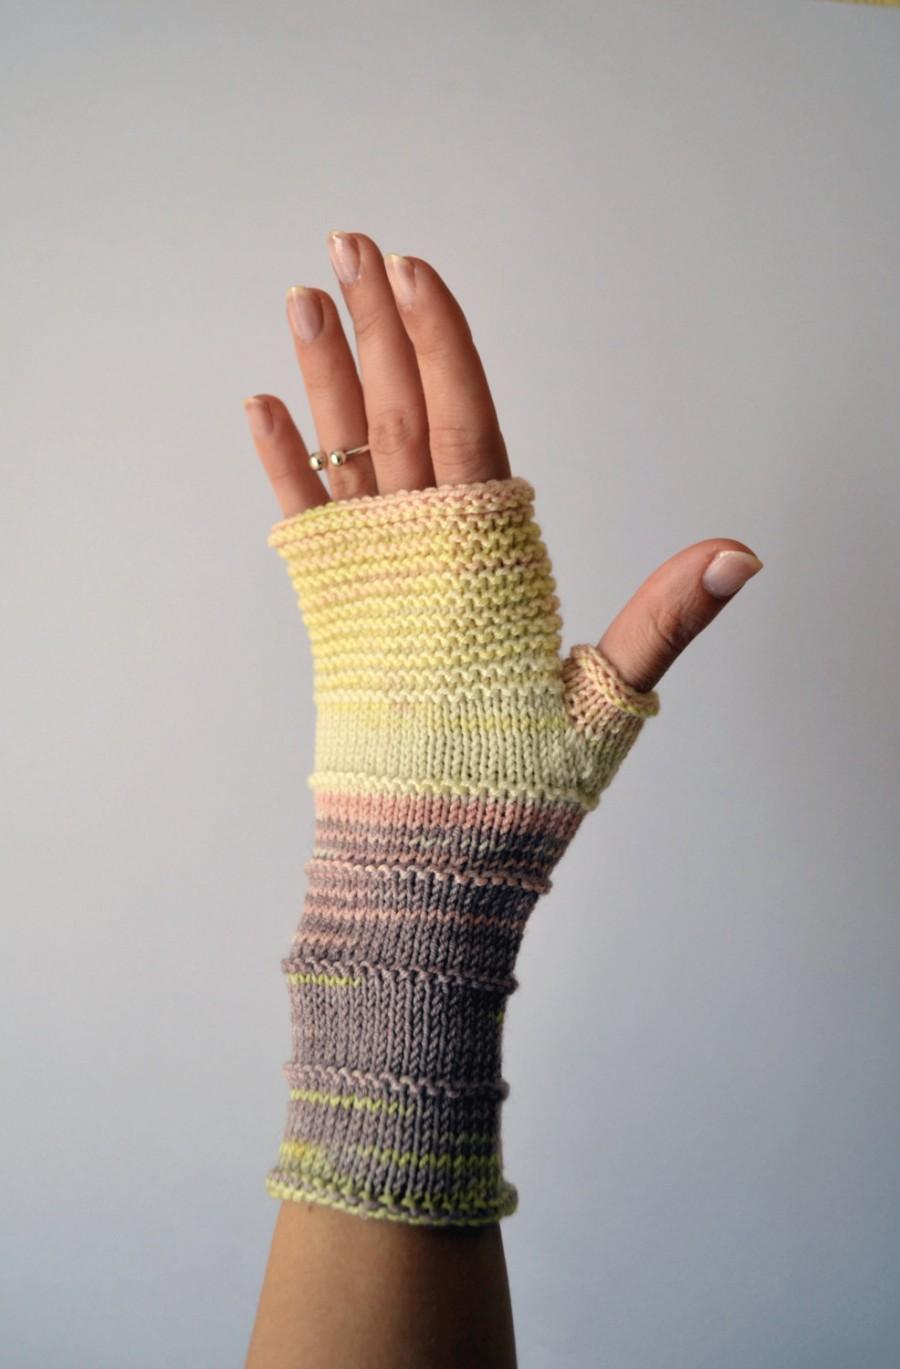 زفاف - Knit fingerless gloves - Merino Wool Fingerless - Colorful Accessories - Winter Gloves - Gift For Her - Rainbow Fingerless Gloves nO 155